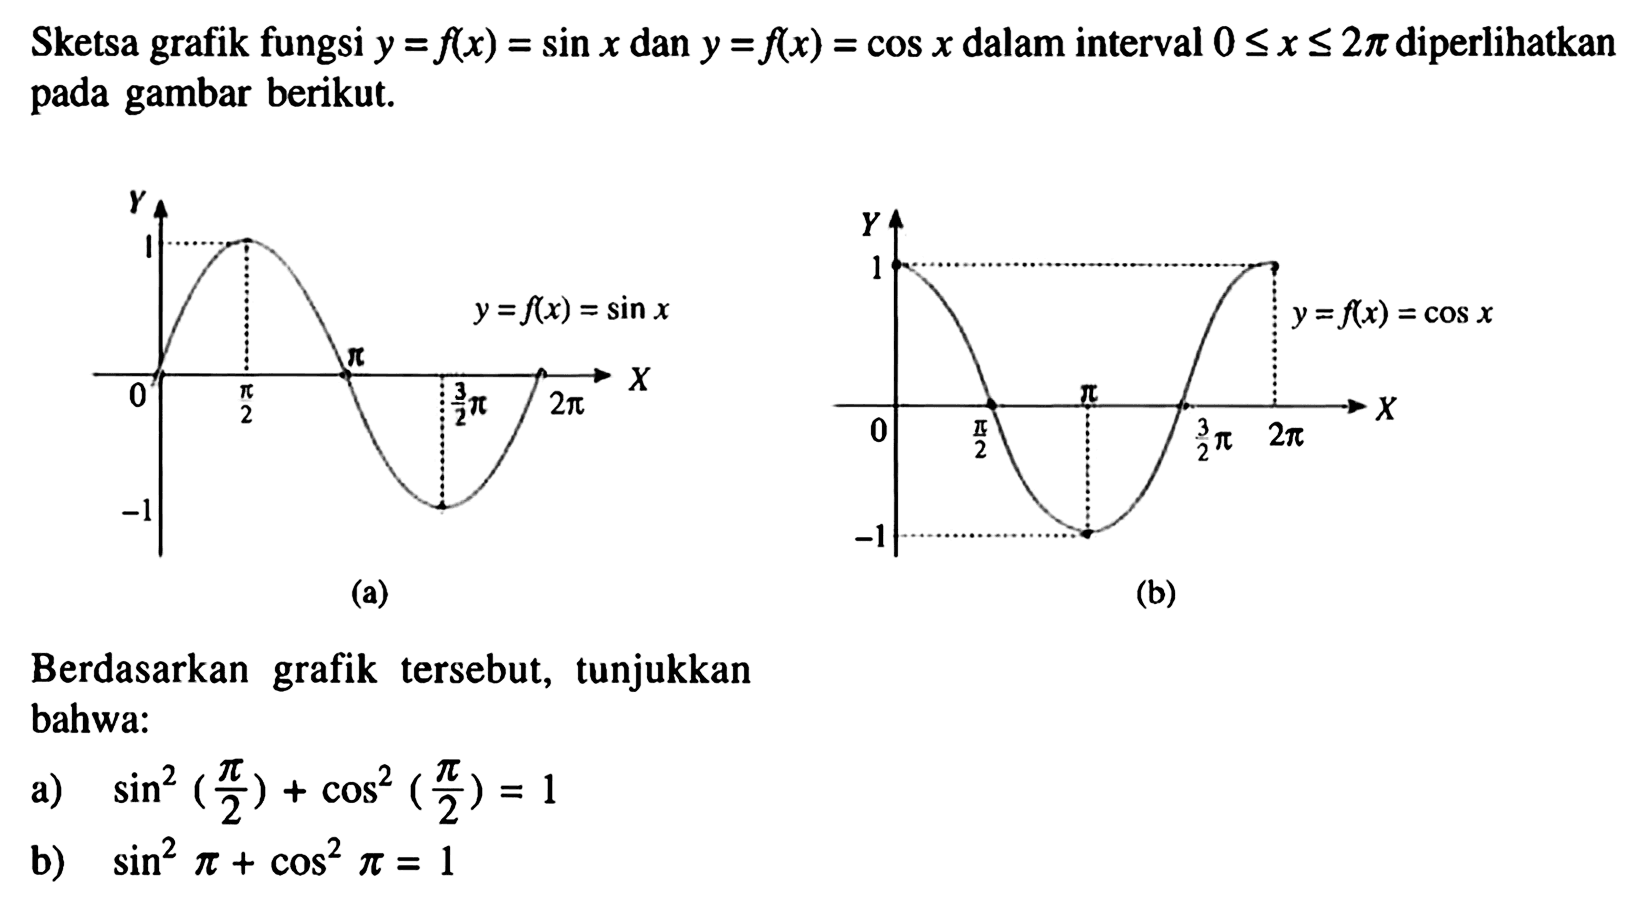 Sketsa grafik fungsi y=f(x)=sinx dan y=f(x)=cosx dalam interval 0<=x<=2pi diperlihatkan pada gambar berikut. y=f(x)=sinx f(x)=cosx Berdasarkan grafik tersebut, tunjukkan bahwa: a) sin^2(pi/2)+cos^2(pi/2)=1 b) sin^2 pi+cos^2 pi=1